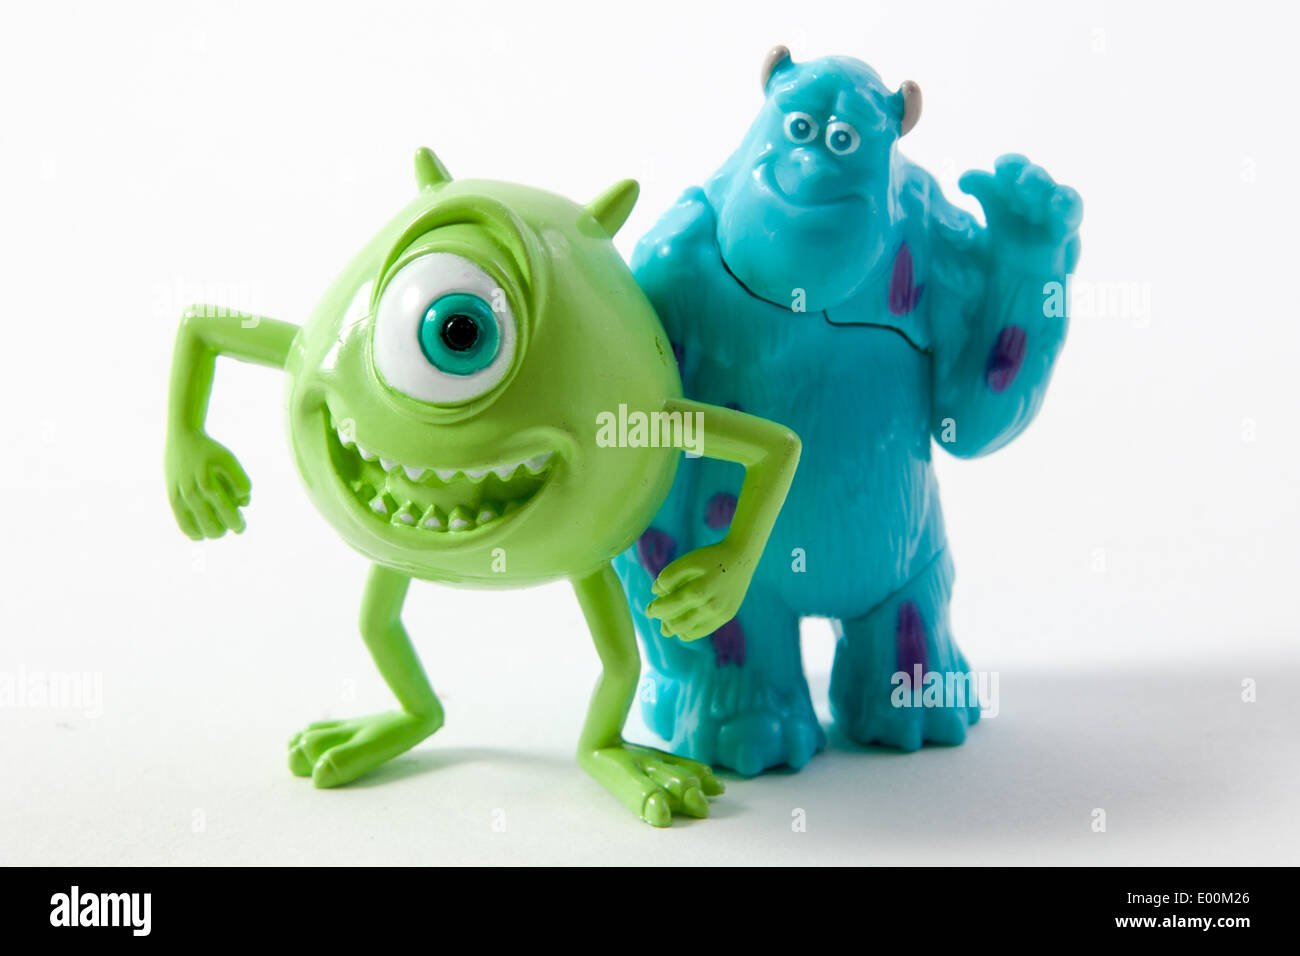 Figuras de plástico de Mike Wazowski y James P. Sullivan de Monsters Inc,  la película de Disney para niños Fotografía de stock - Alamy